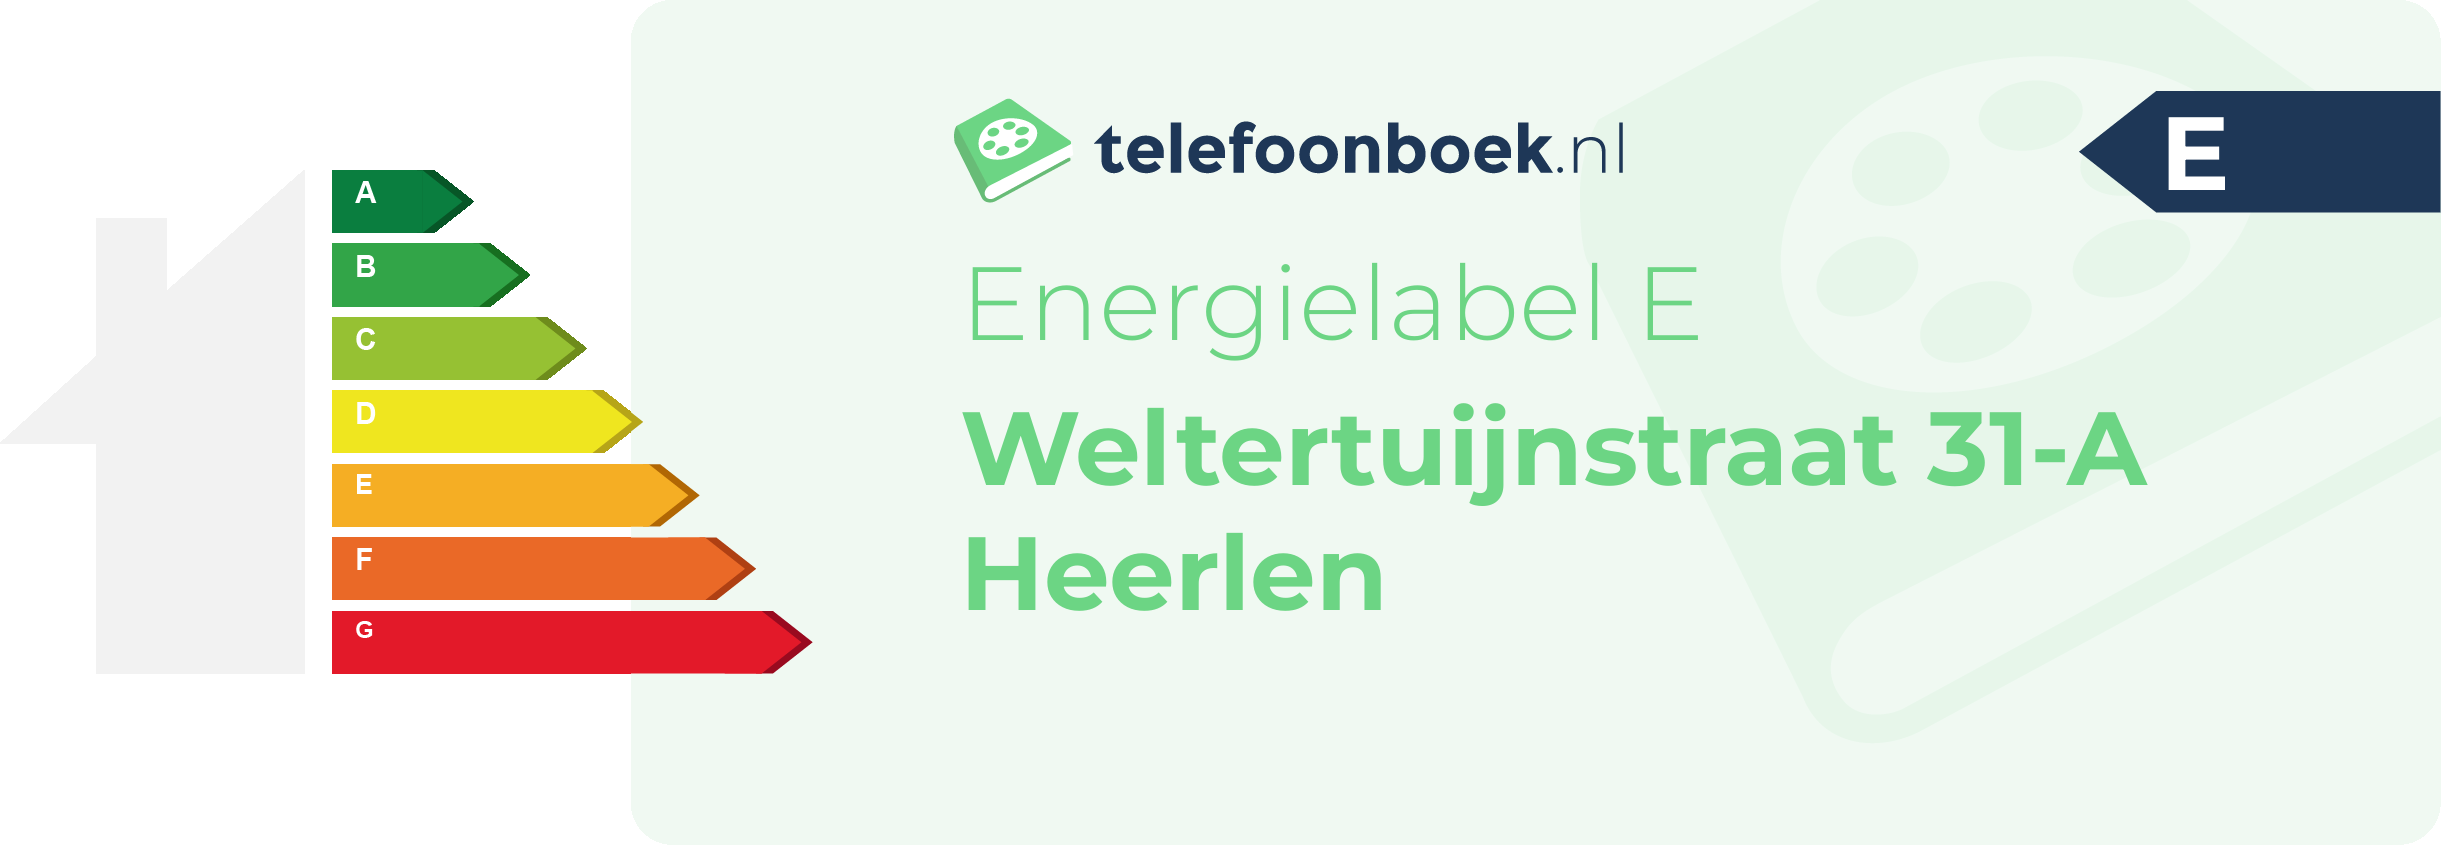 Energielabel Weltertuijnstraat 31-A Heerlen